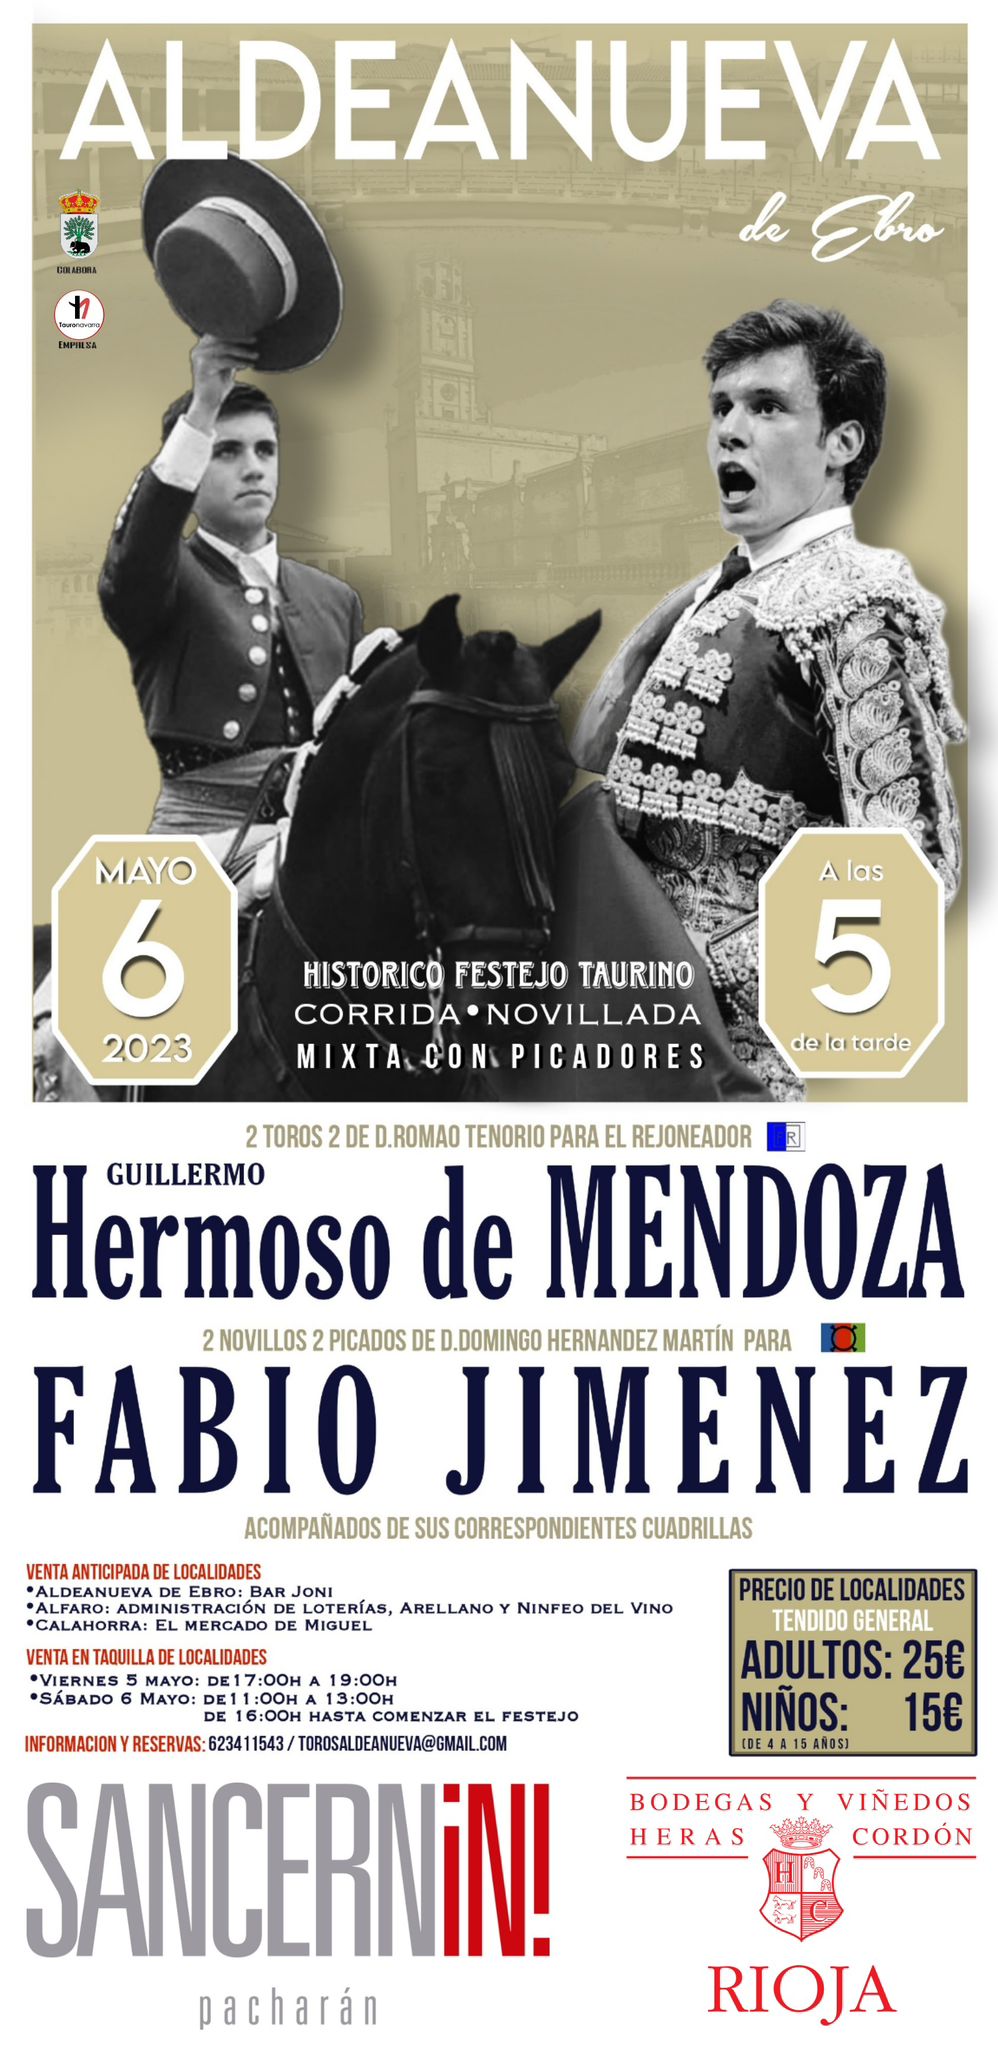 Cartel de la feria taurina de la juventud de Aldeanueva de Ebro, con Guillermo Hermoso de Mendoza. CEDIDA